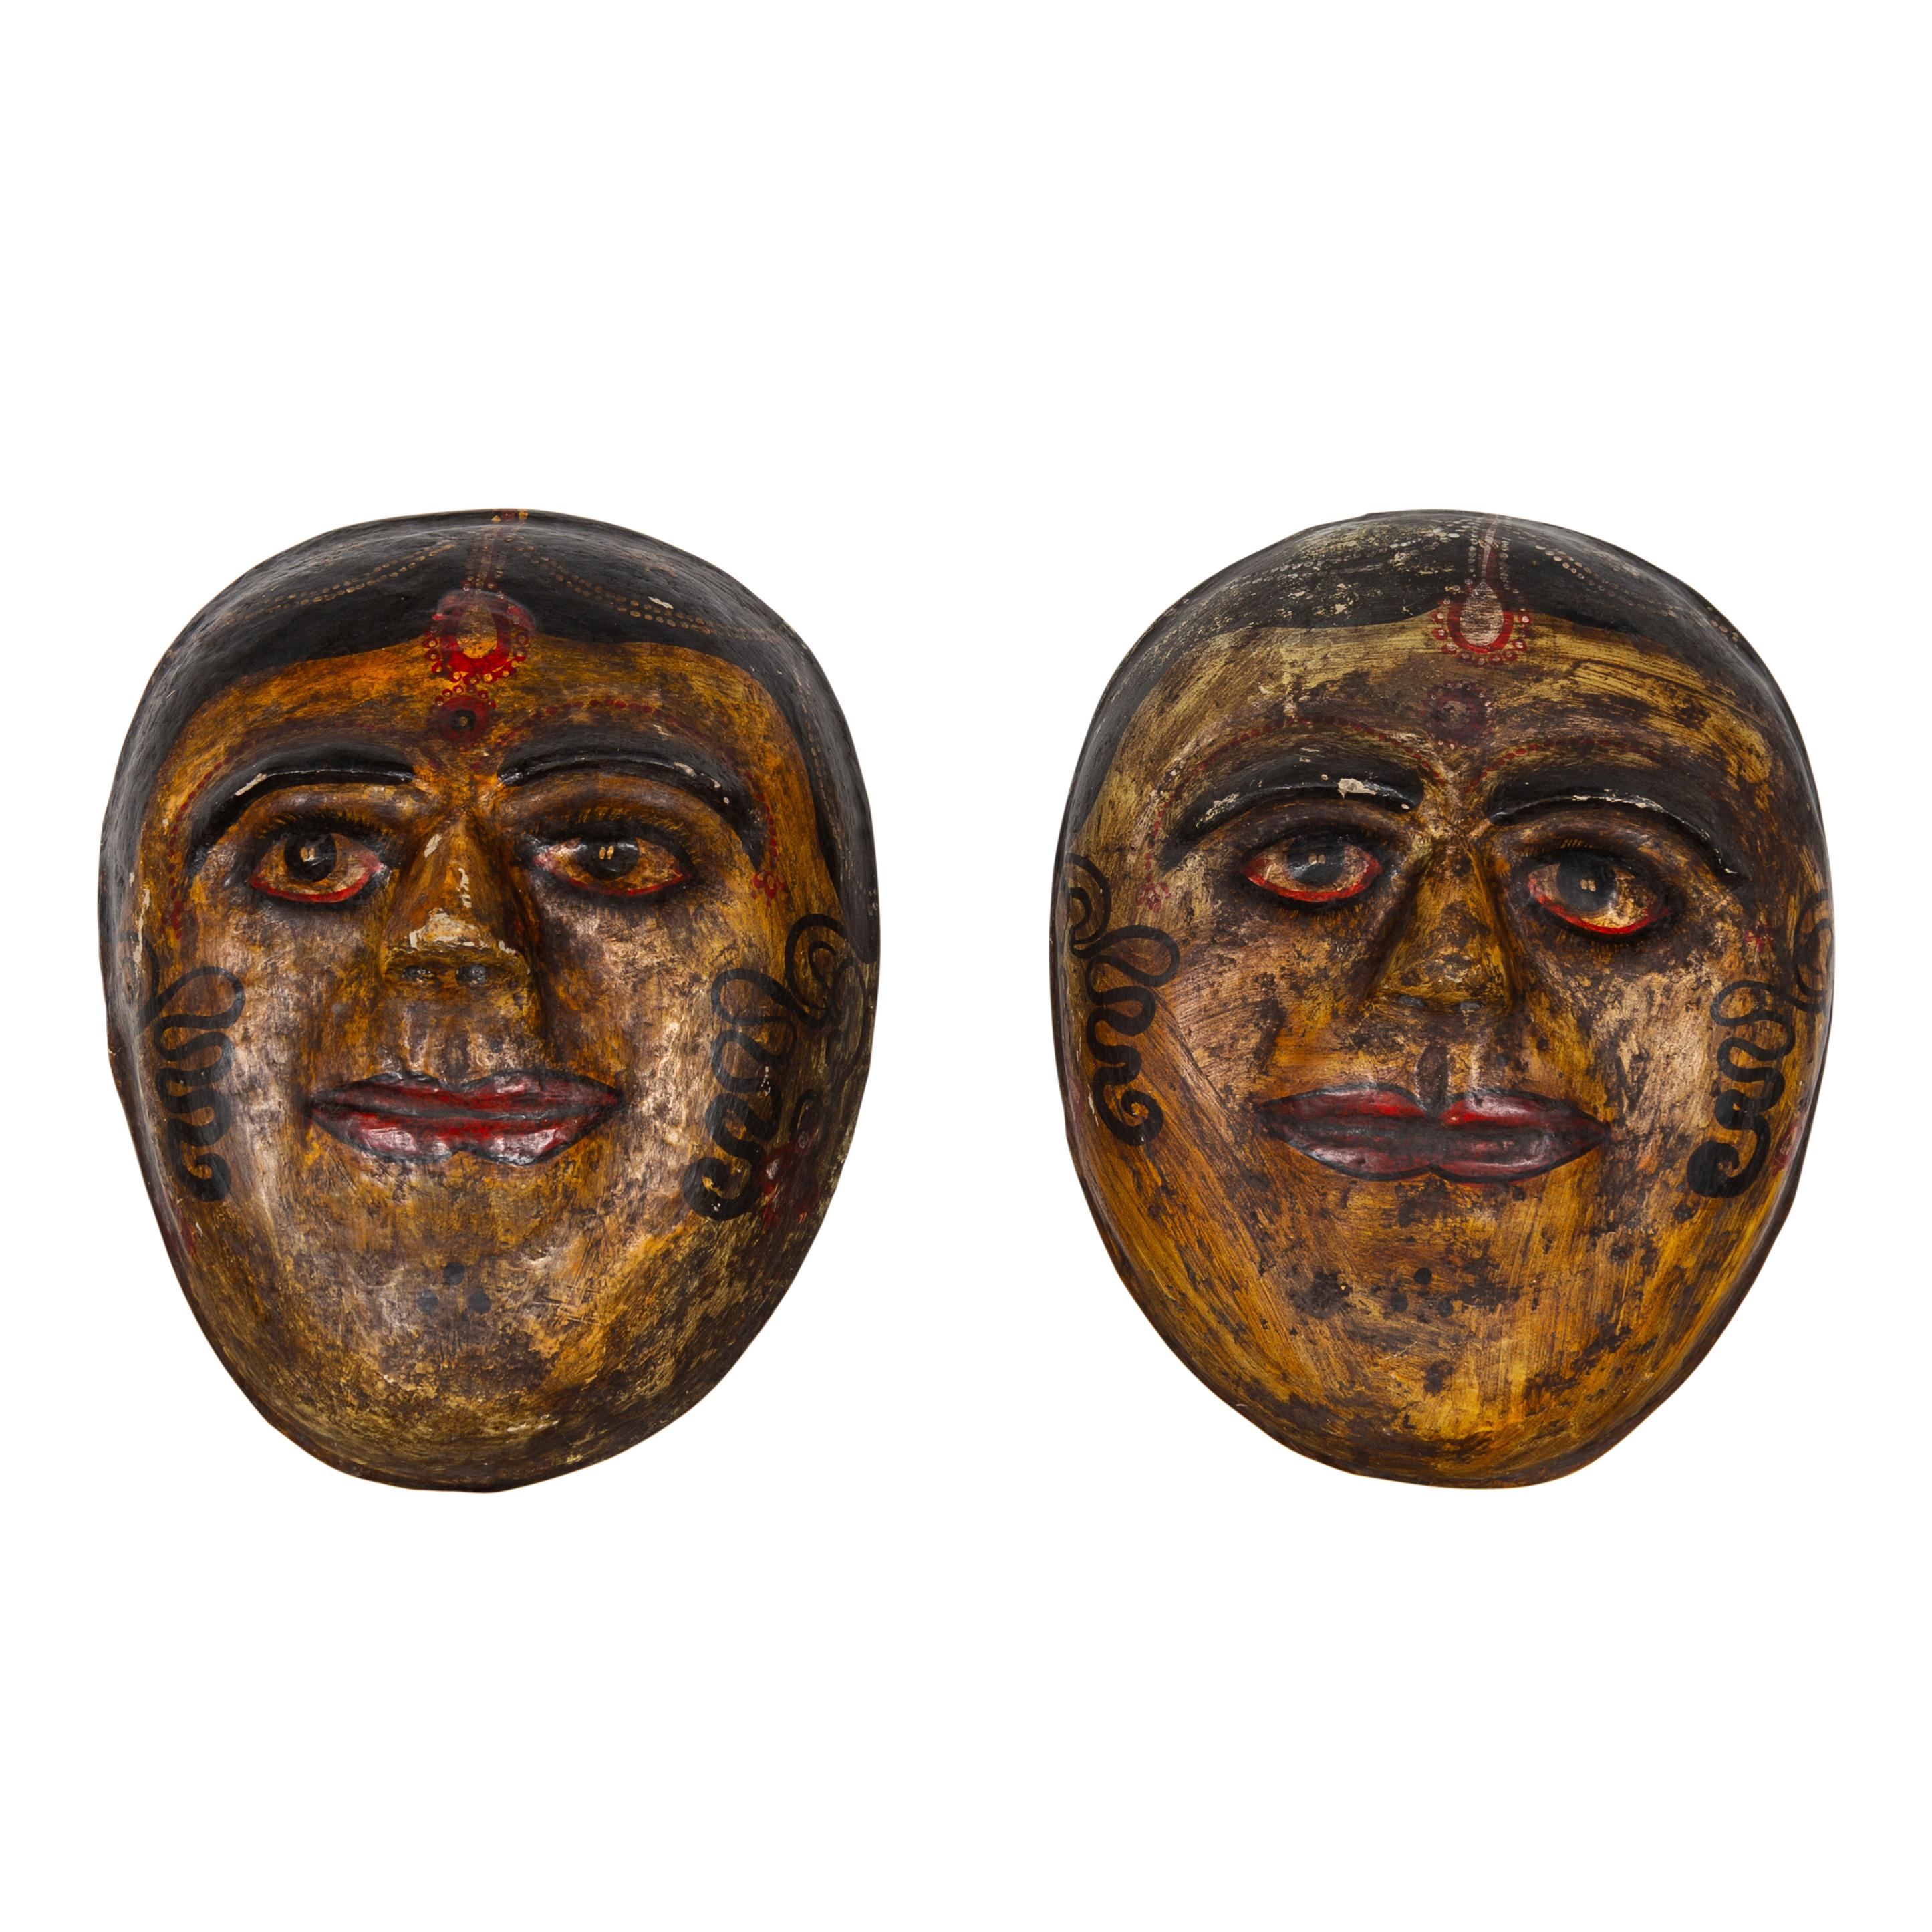 Deux masques indiens anciens en papier mâché peints à la main, datant du début du 20e siècle, représentant des mariées indiennes. Ils sont vendus à l'unité. Doté d'une finition polychrome dans les tons ocre, rouge et noir, chacun de ces masques